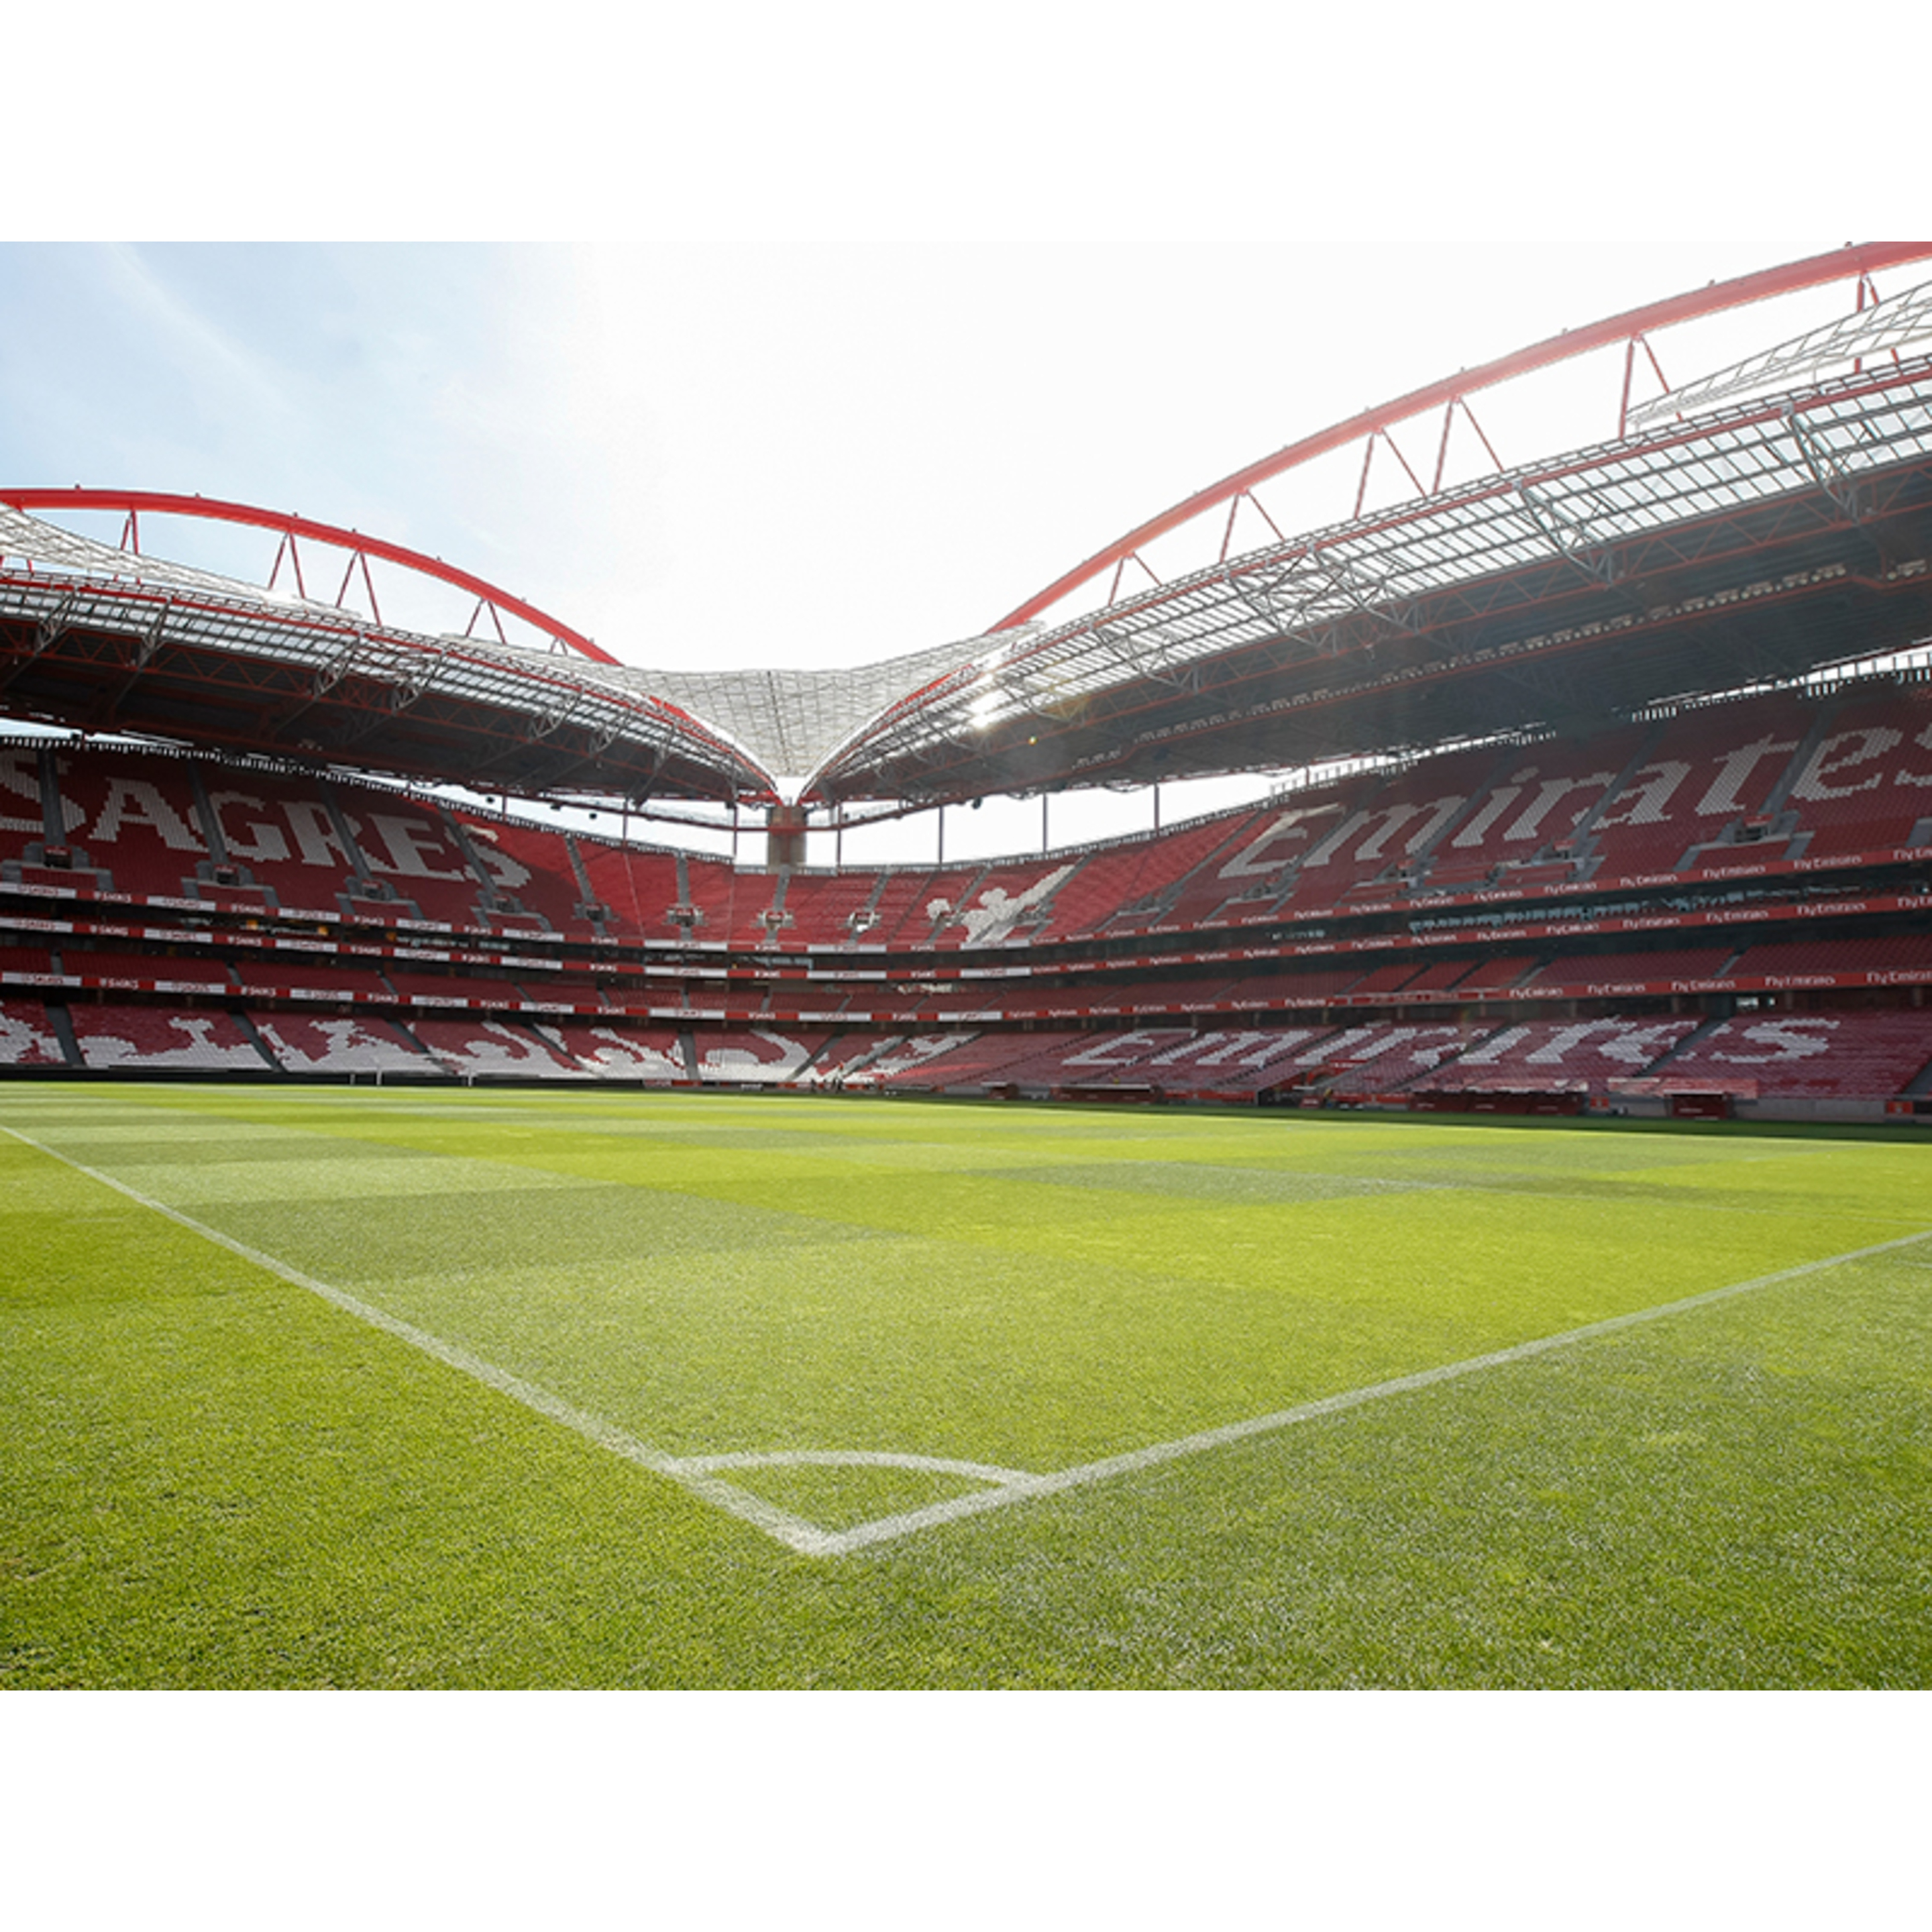 Pack Presente - Sport Lisboa E Benfica | Estádio E Museu + Cachecóis + Cheque Gourmet